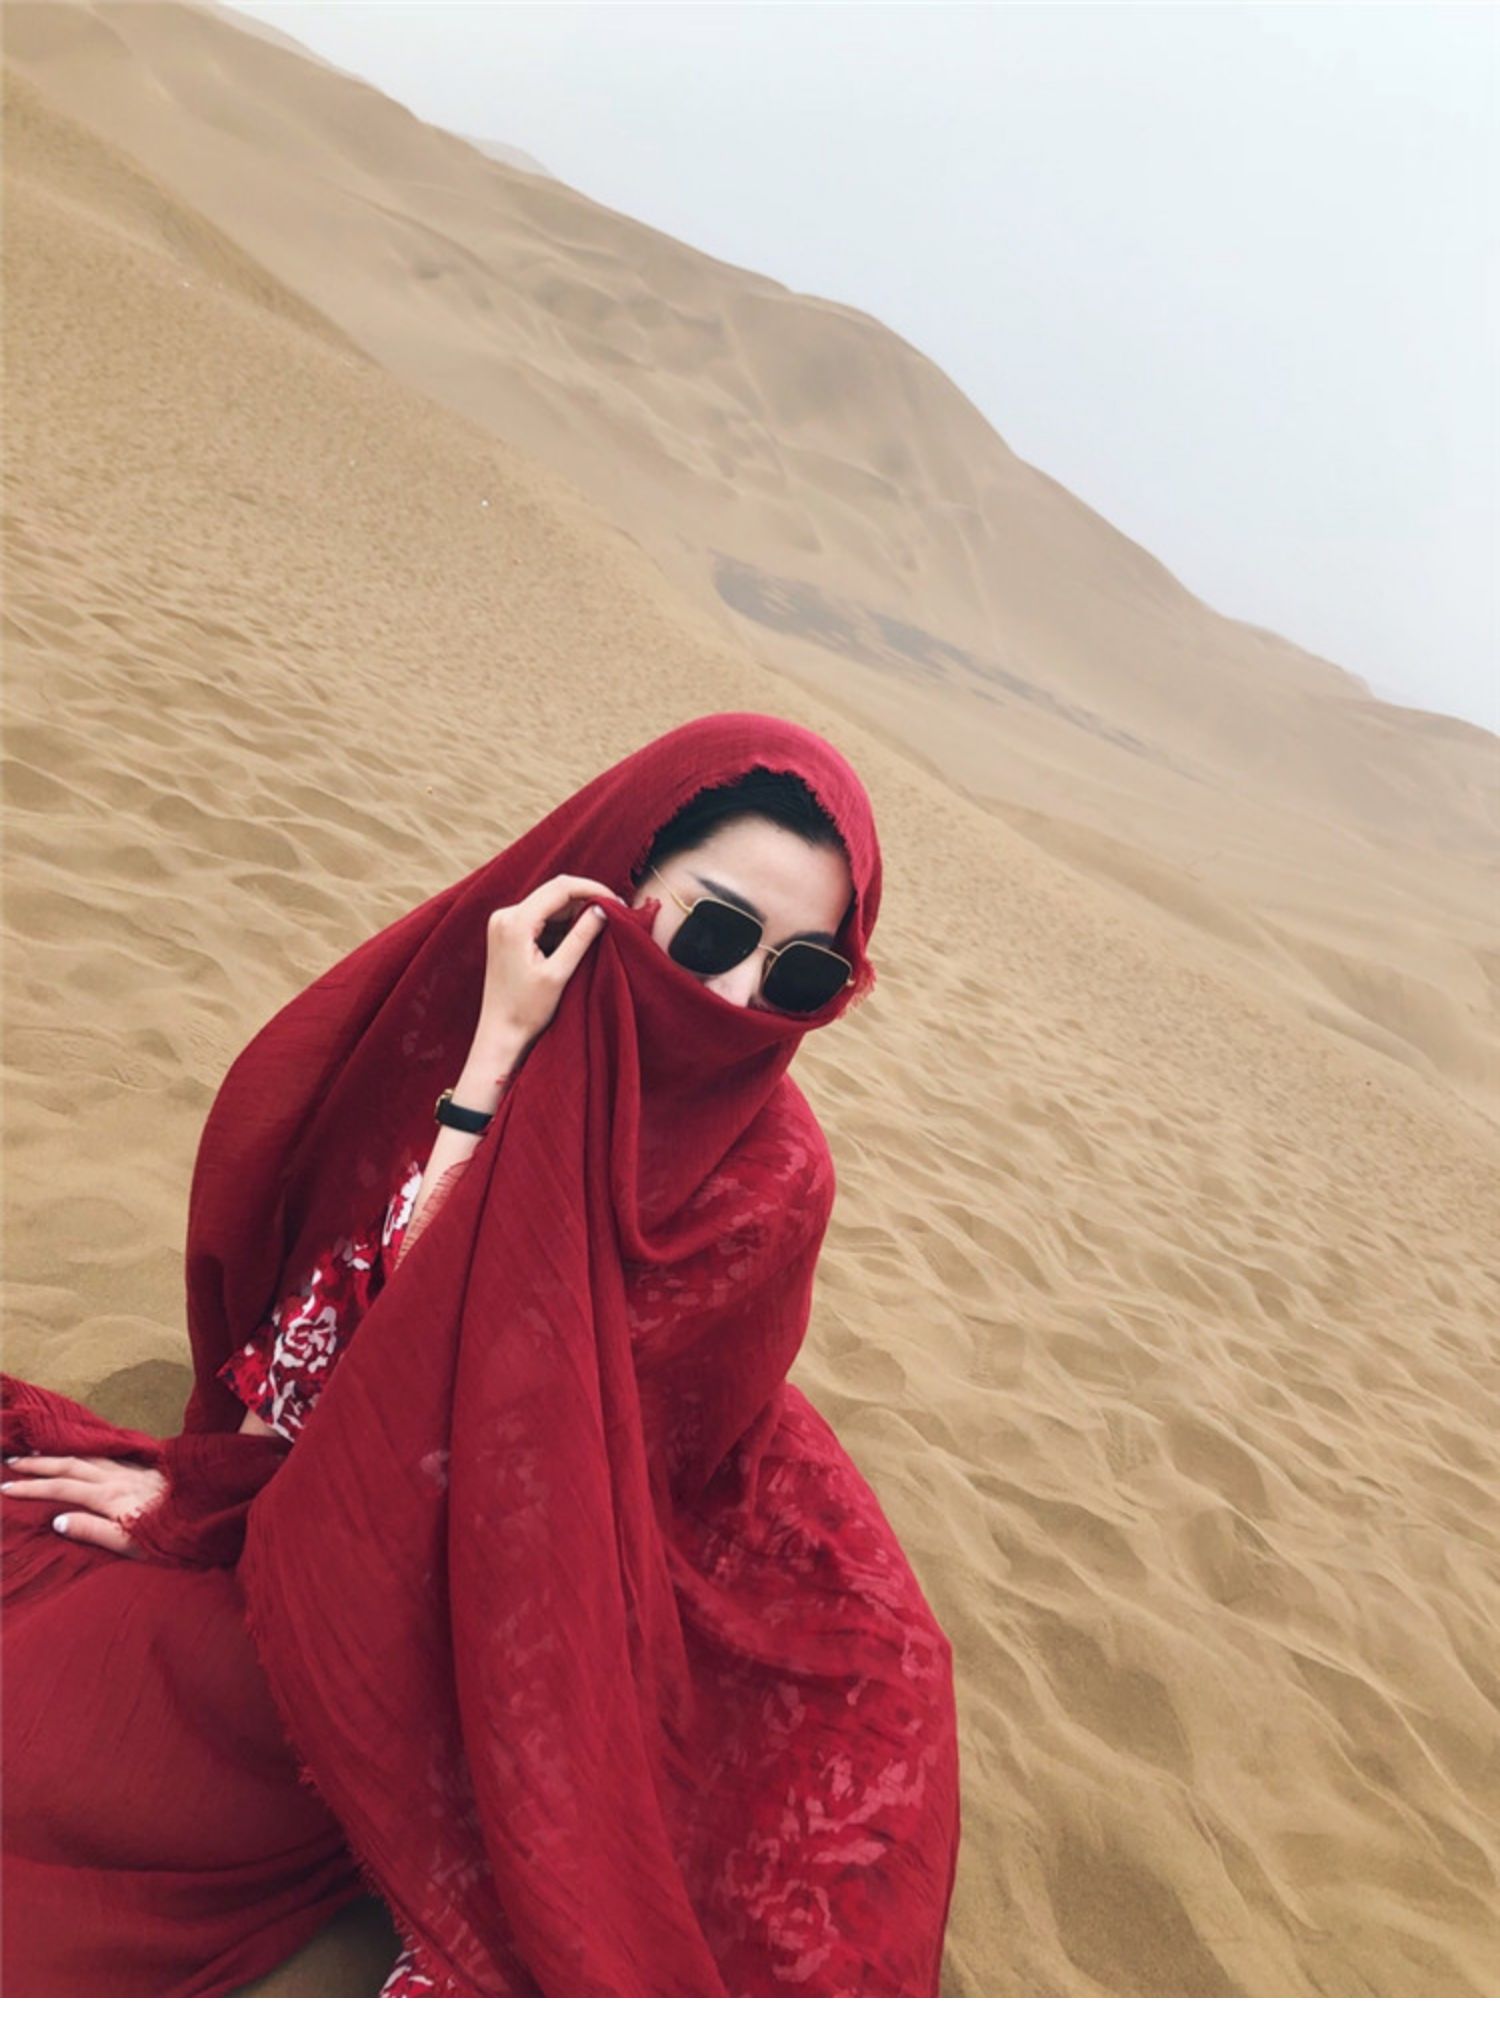 沙漠丝巾拍照图片欣赏图片